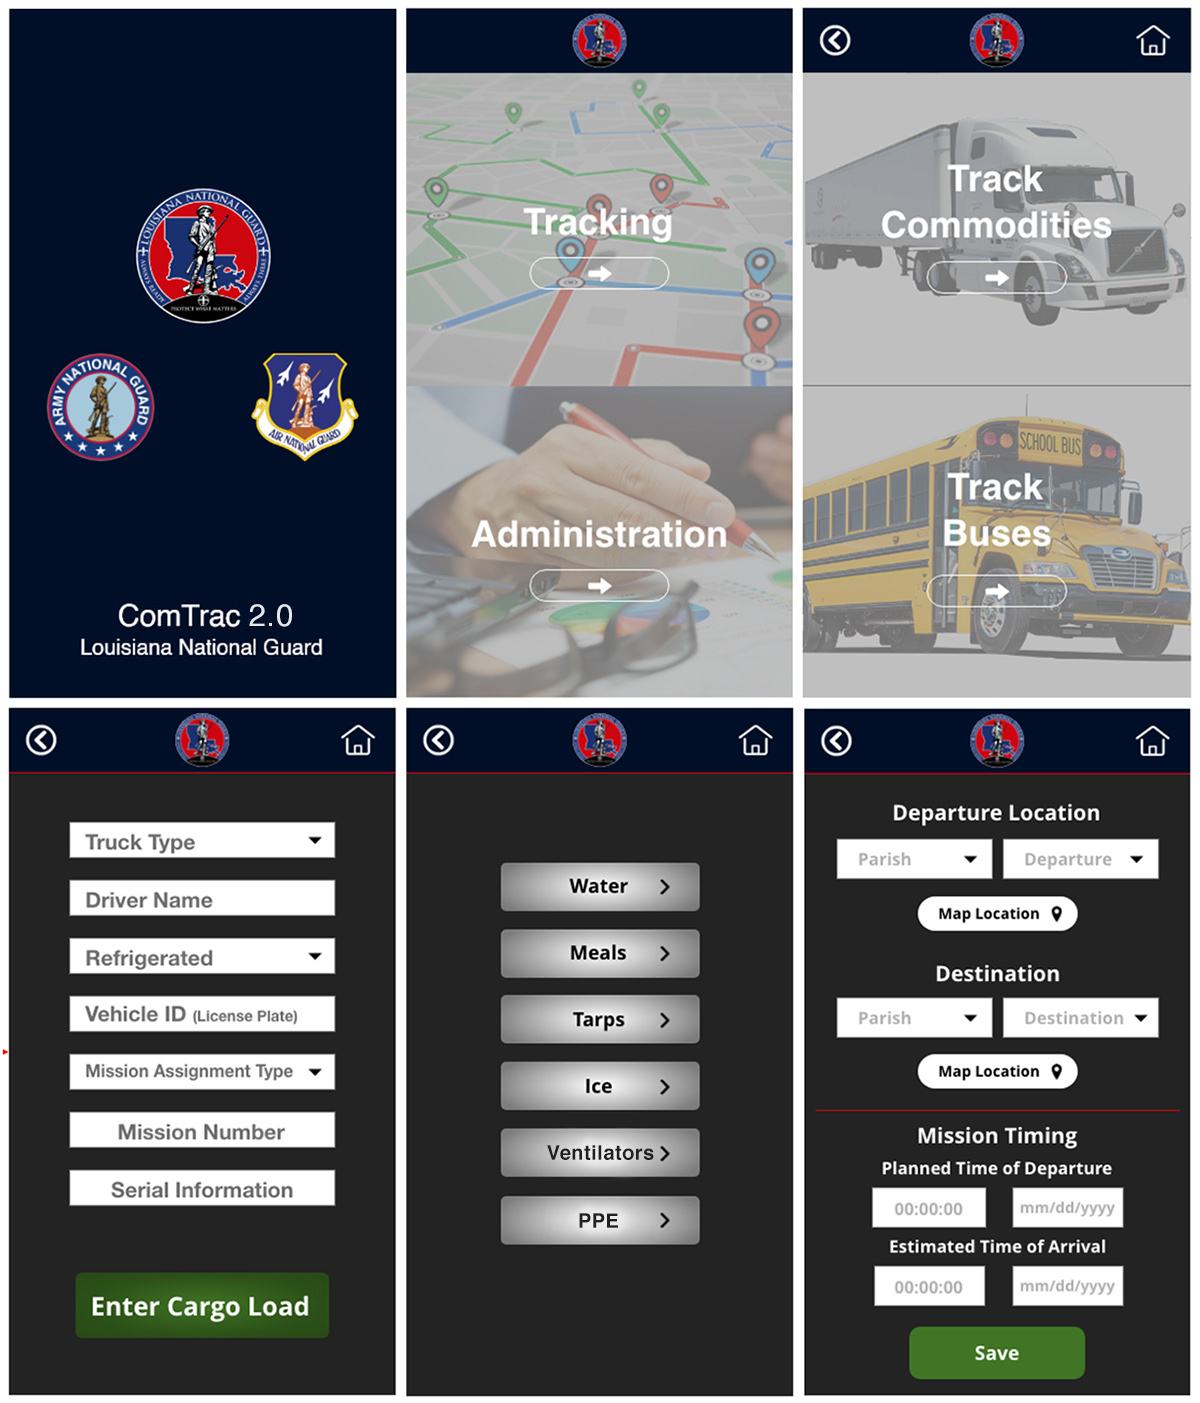 SDMI’s student-developed tracking app